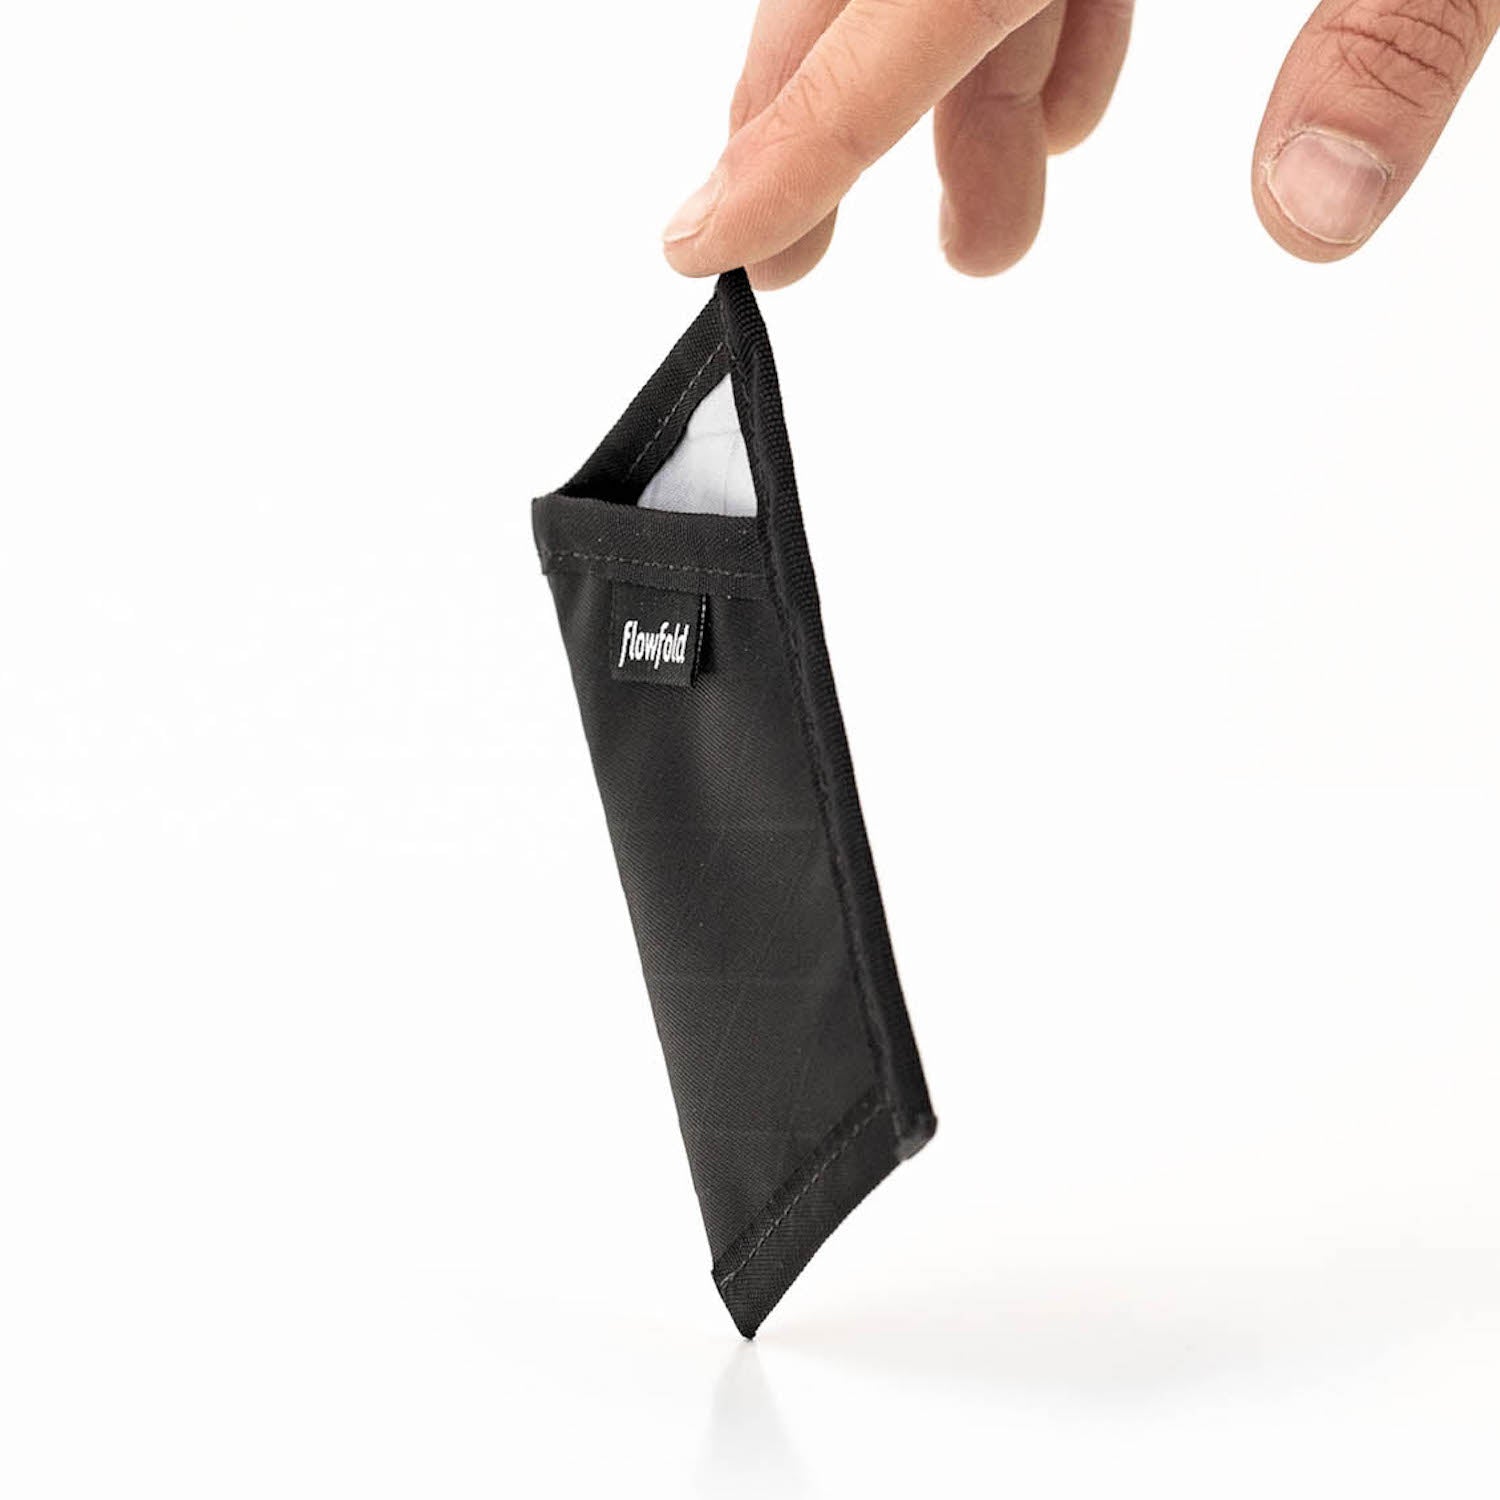 Flowfold Minimalist - Card Holder Wallet フローフォールド ミニマリスト カードホルダー ウォレット